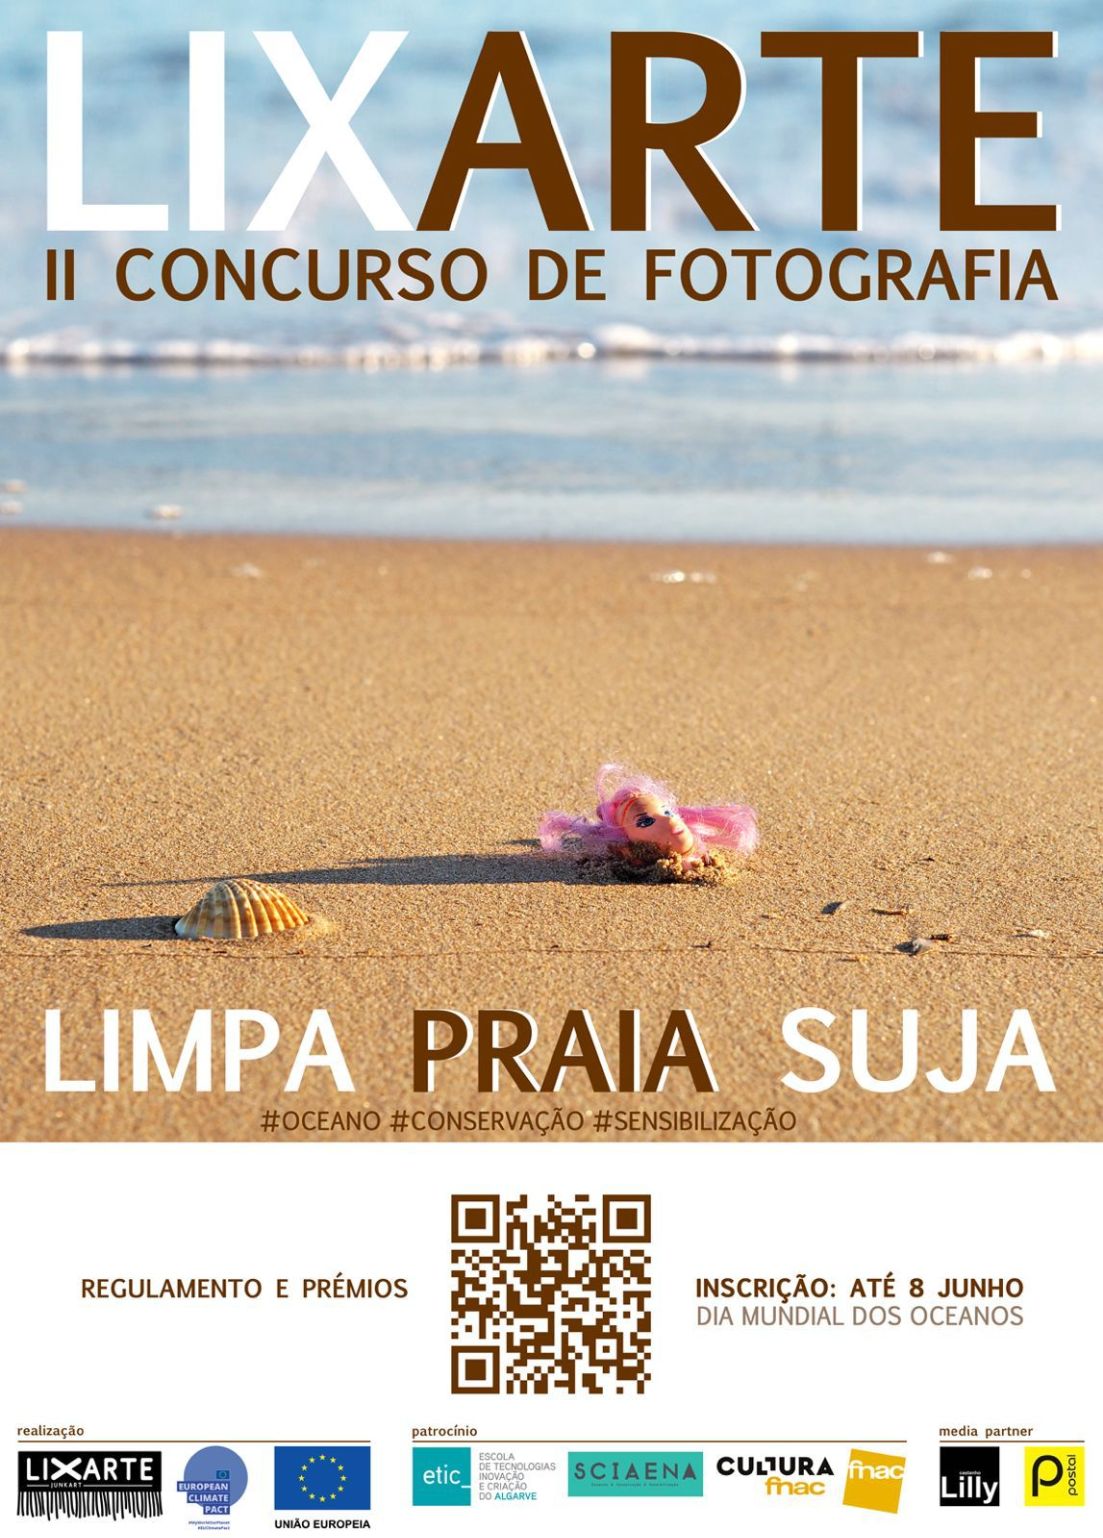 II Concurso de fotografia LIXARTE - Limpa praia suja